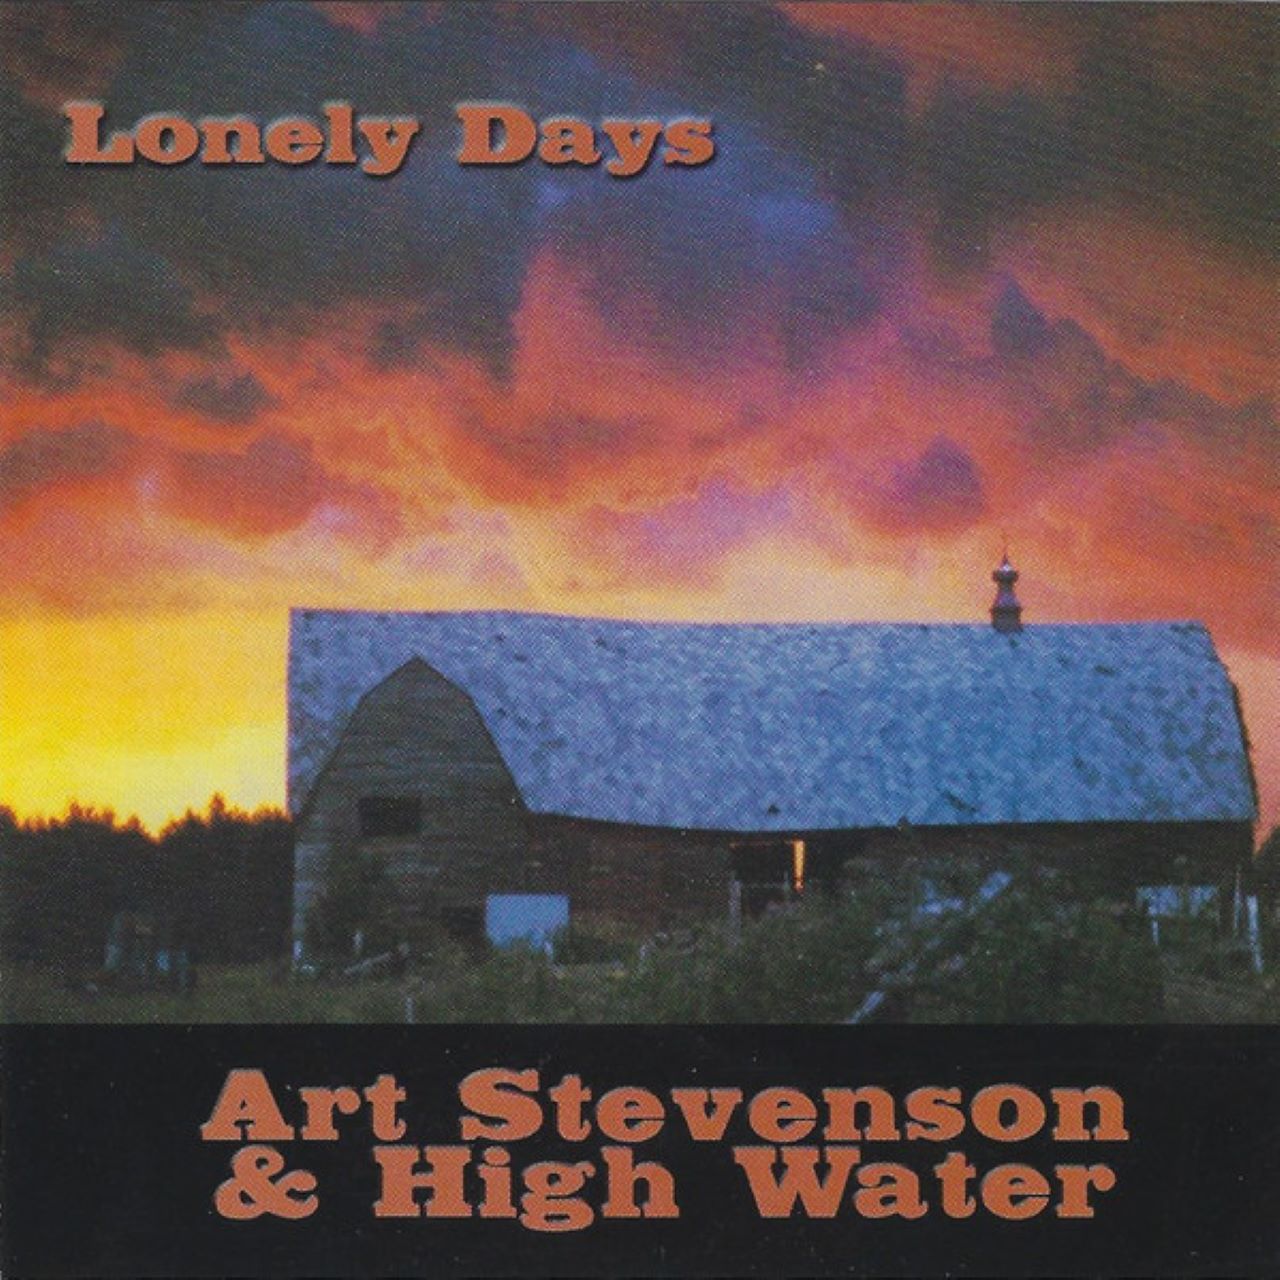 Art Stevenson & High Water - Lonely Days cover album